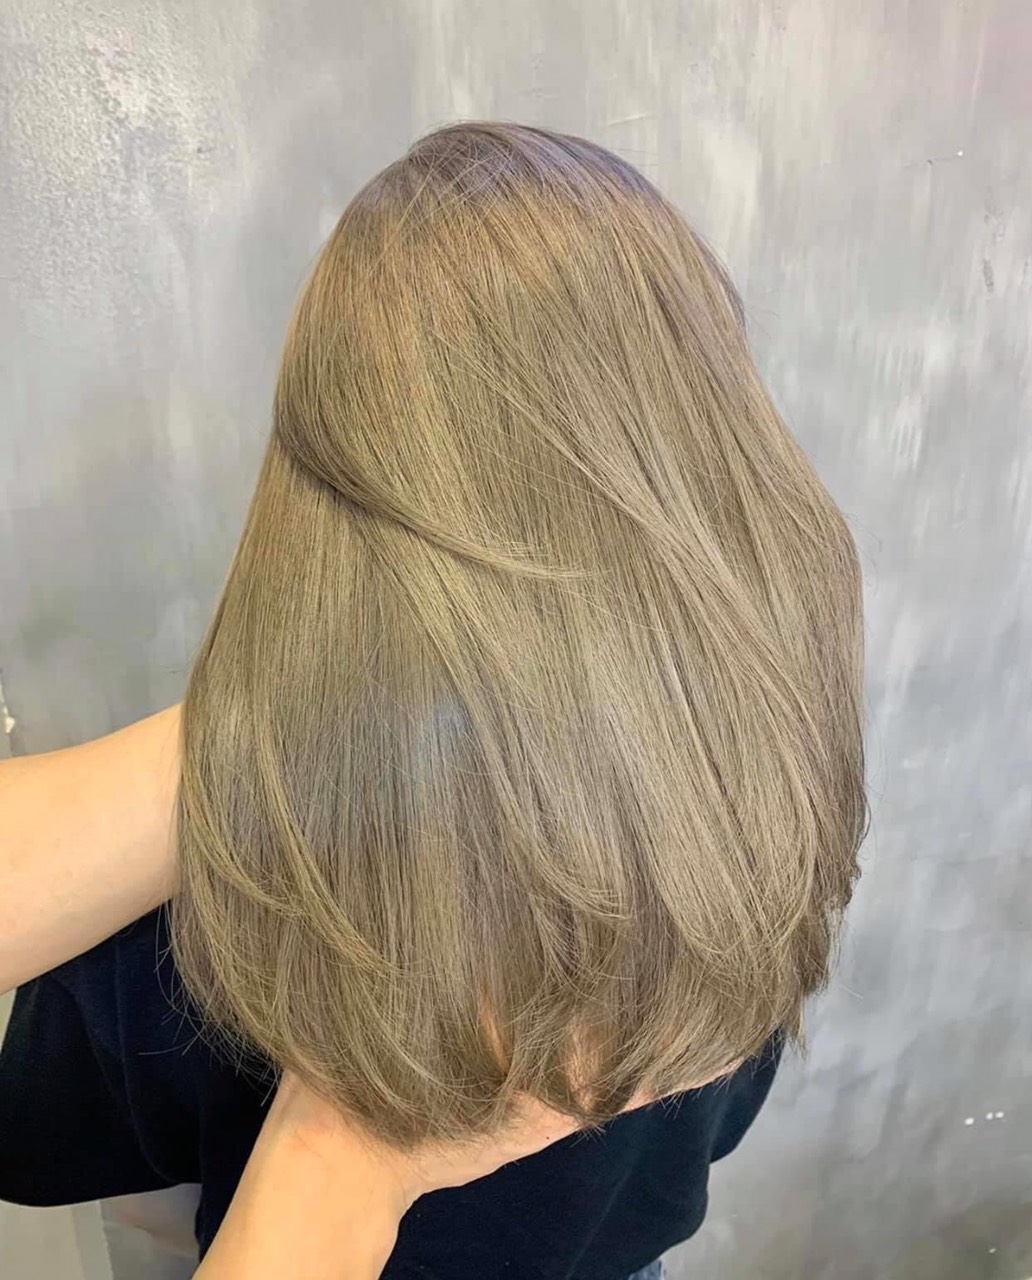 Nếu bạn muốn tìm một kiểu tóc thật sự độc đáo và sáng tạo, thì nâu rêu highlight là sự lựa chọn tuyệt vời. Màu sắc này sẽ làm nổi bật nét đẹp và phong cách của bạn. Hãy xem hình ảnh nâu rêu highlight để thấy sự ấn tượng của kiểu tóc này.